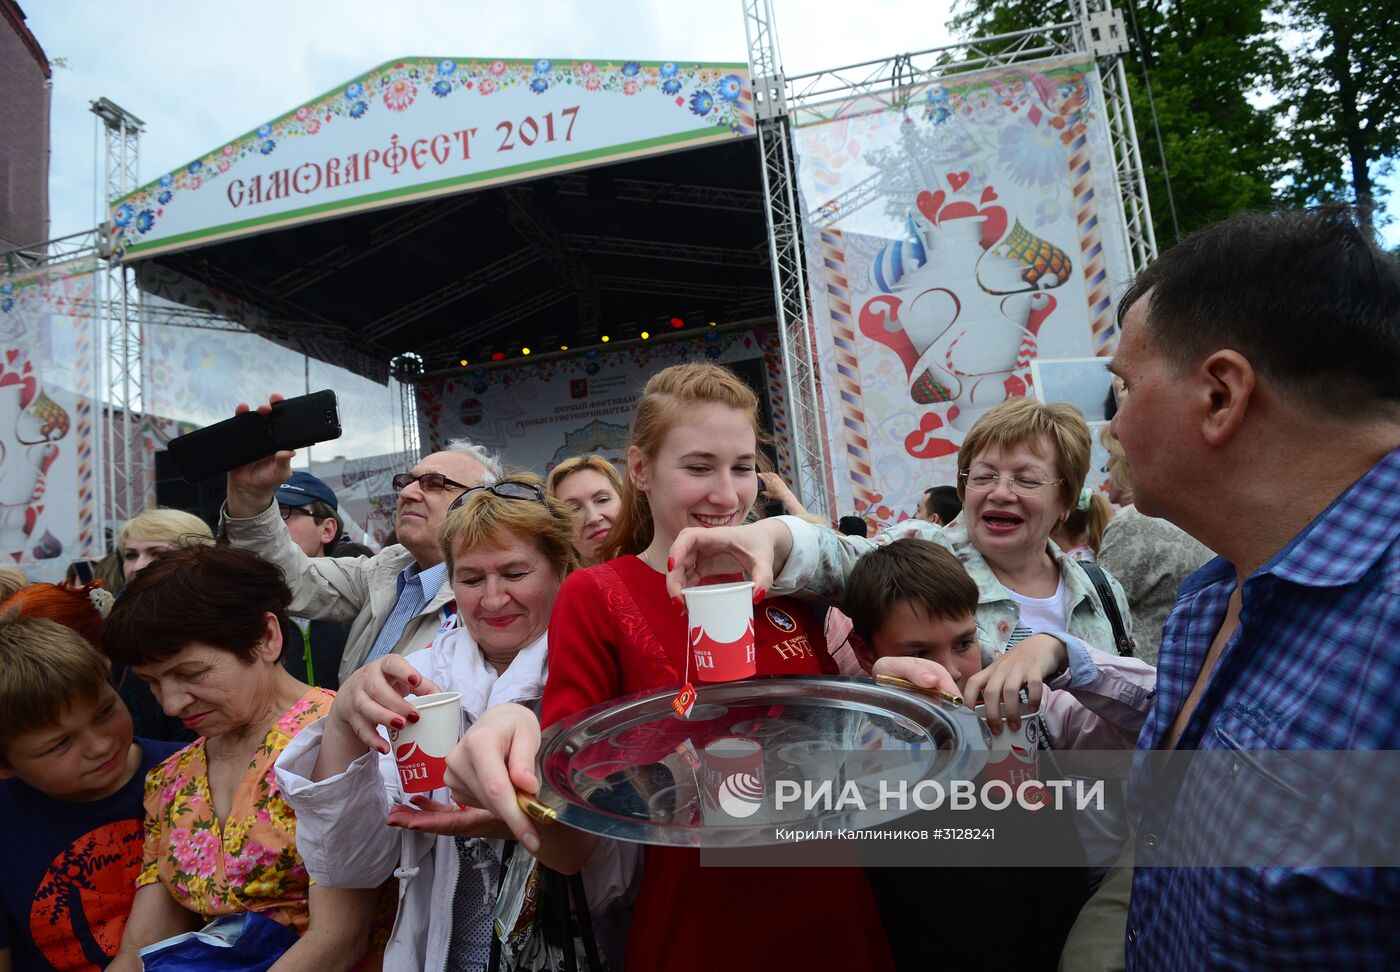 Фестиваль "Самоварфест" в Москве